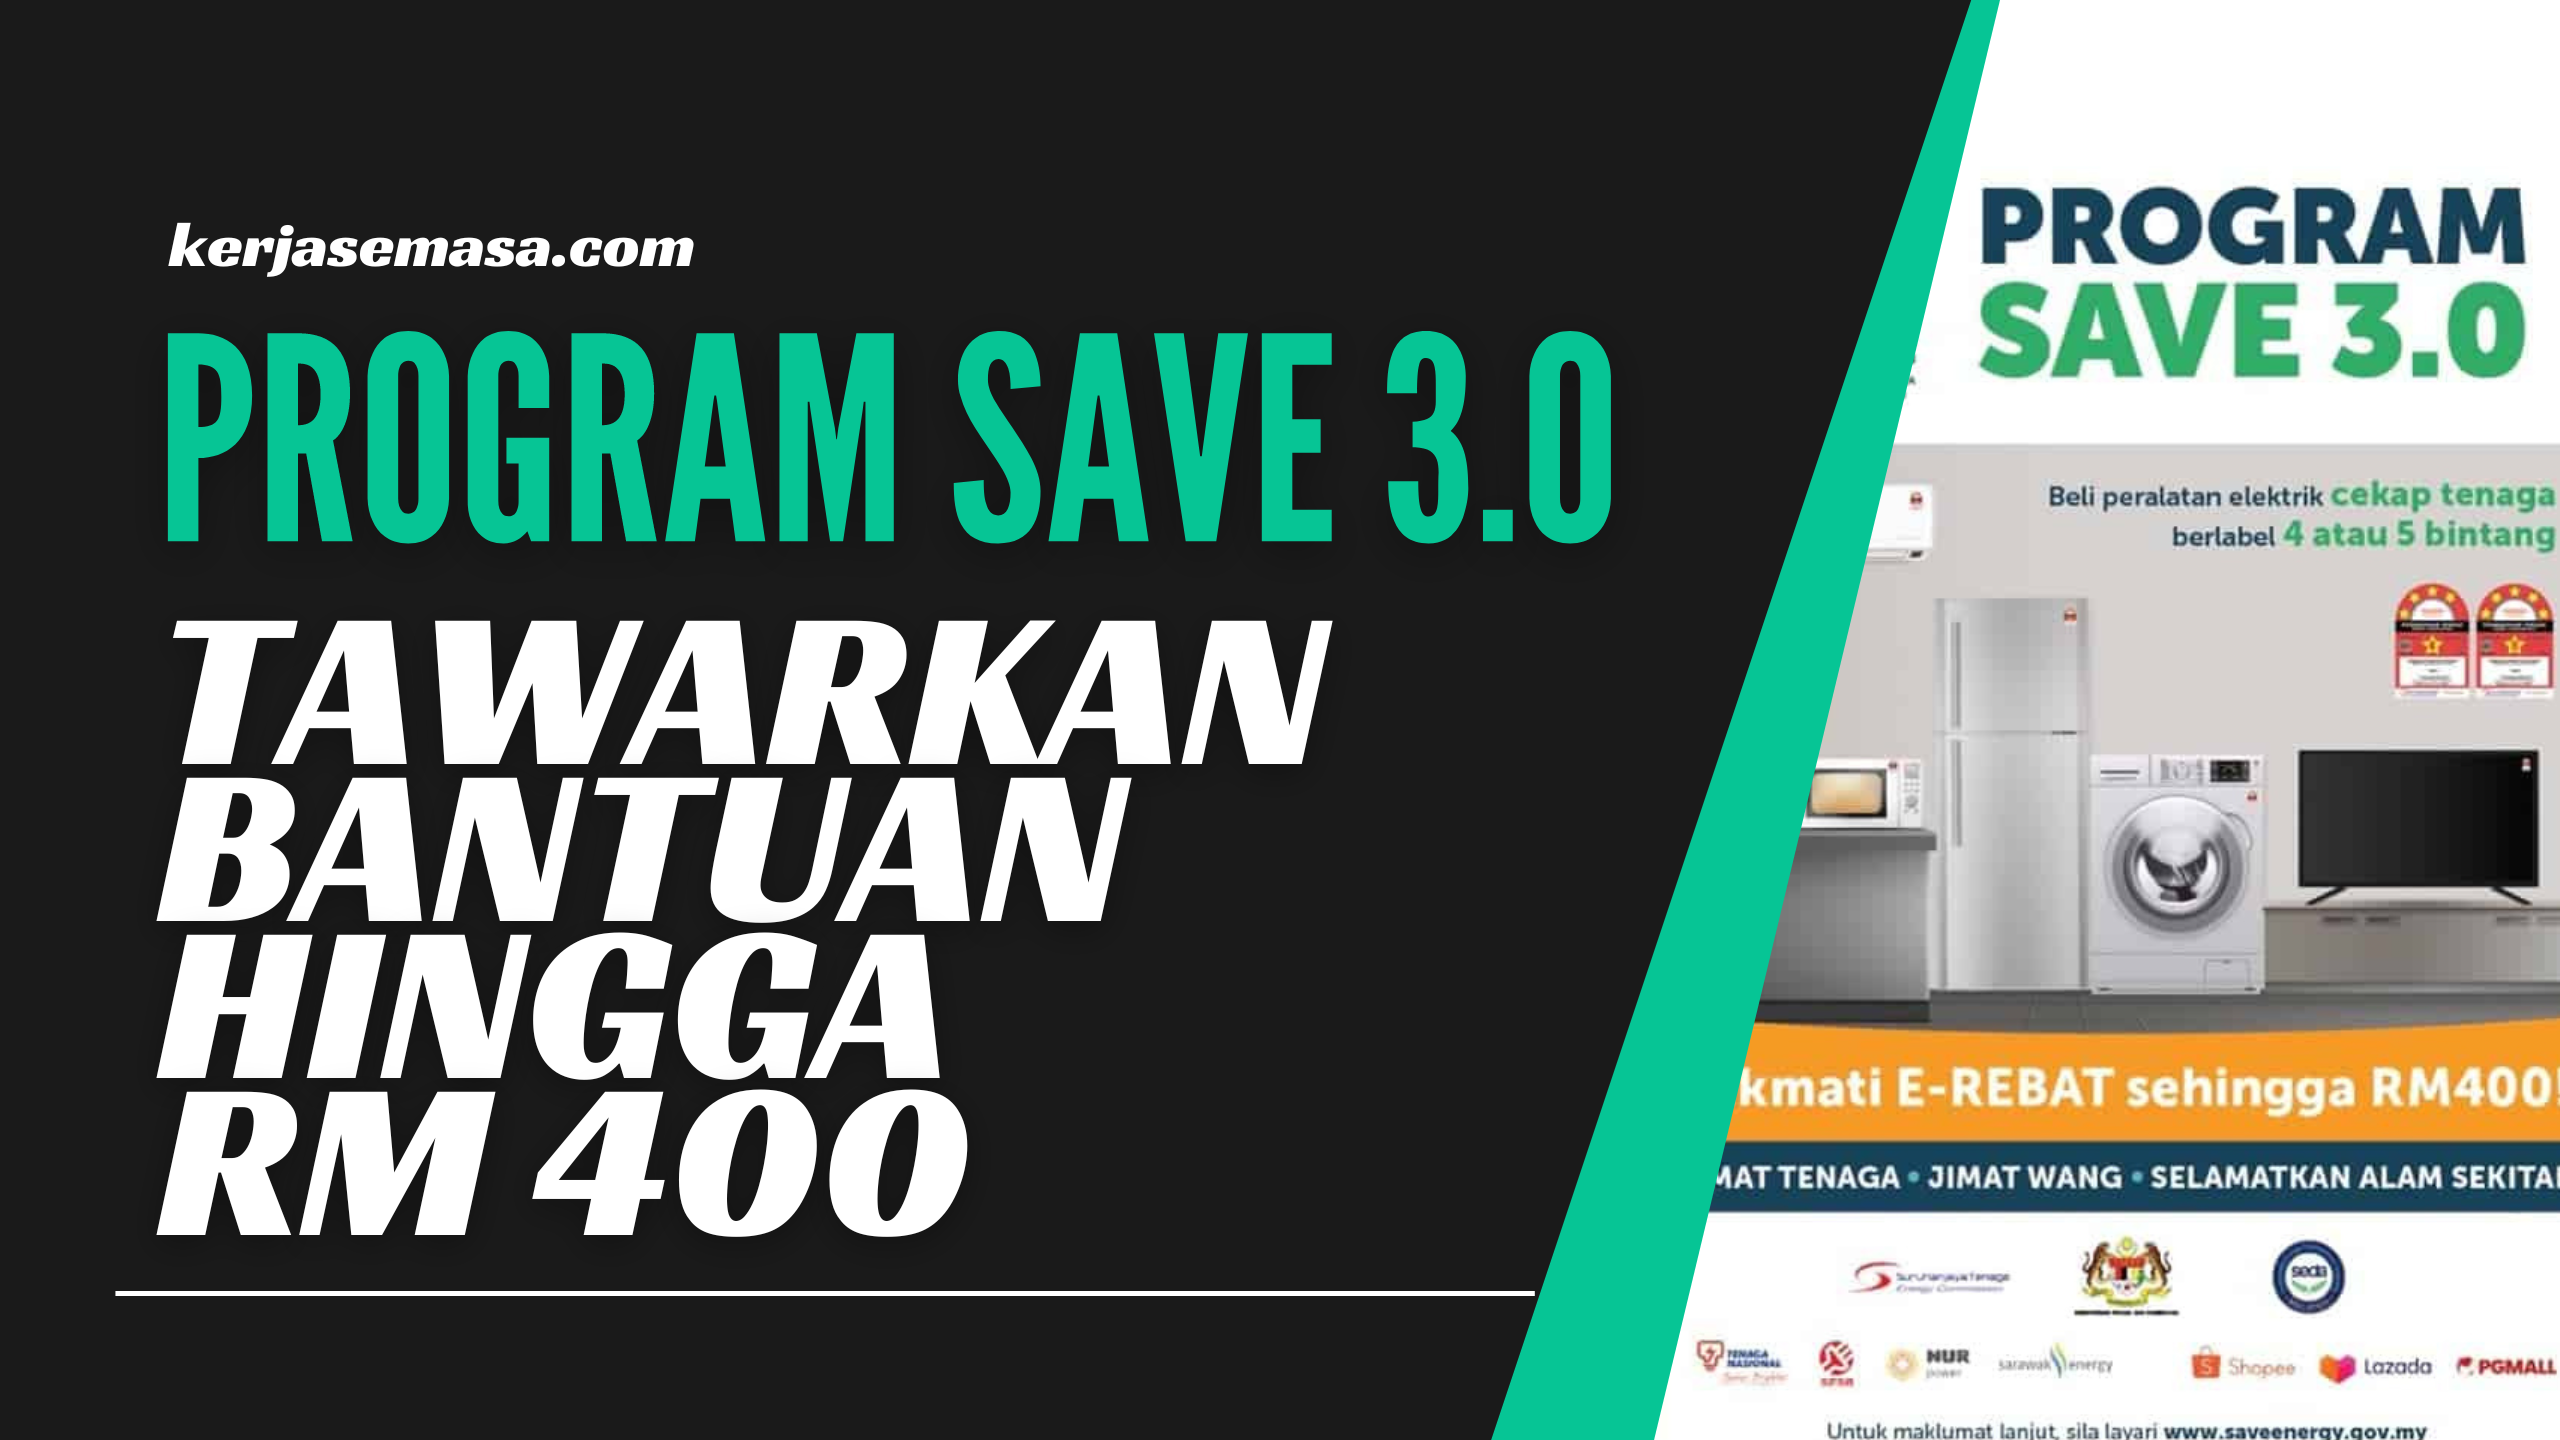 Program Save 3.0 Tawarkan Bantuan Hingga RM 400